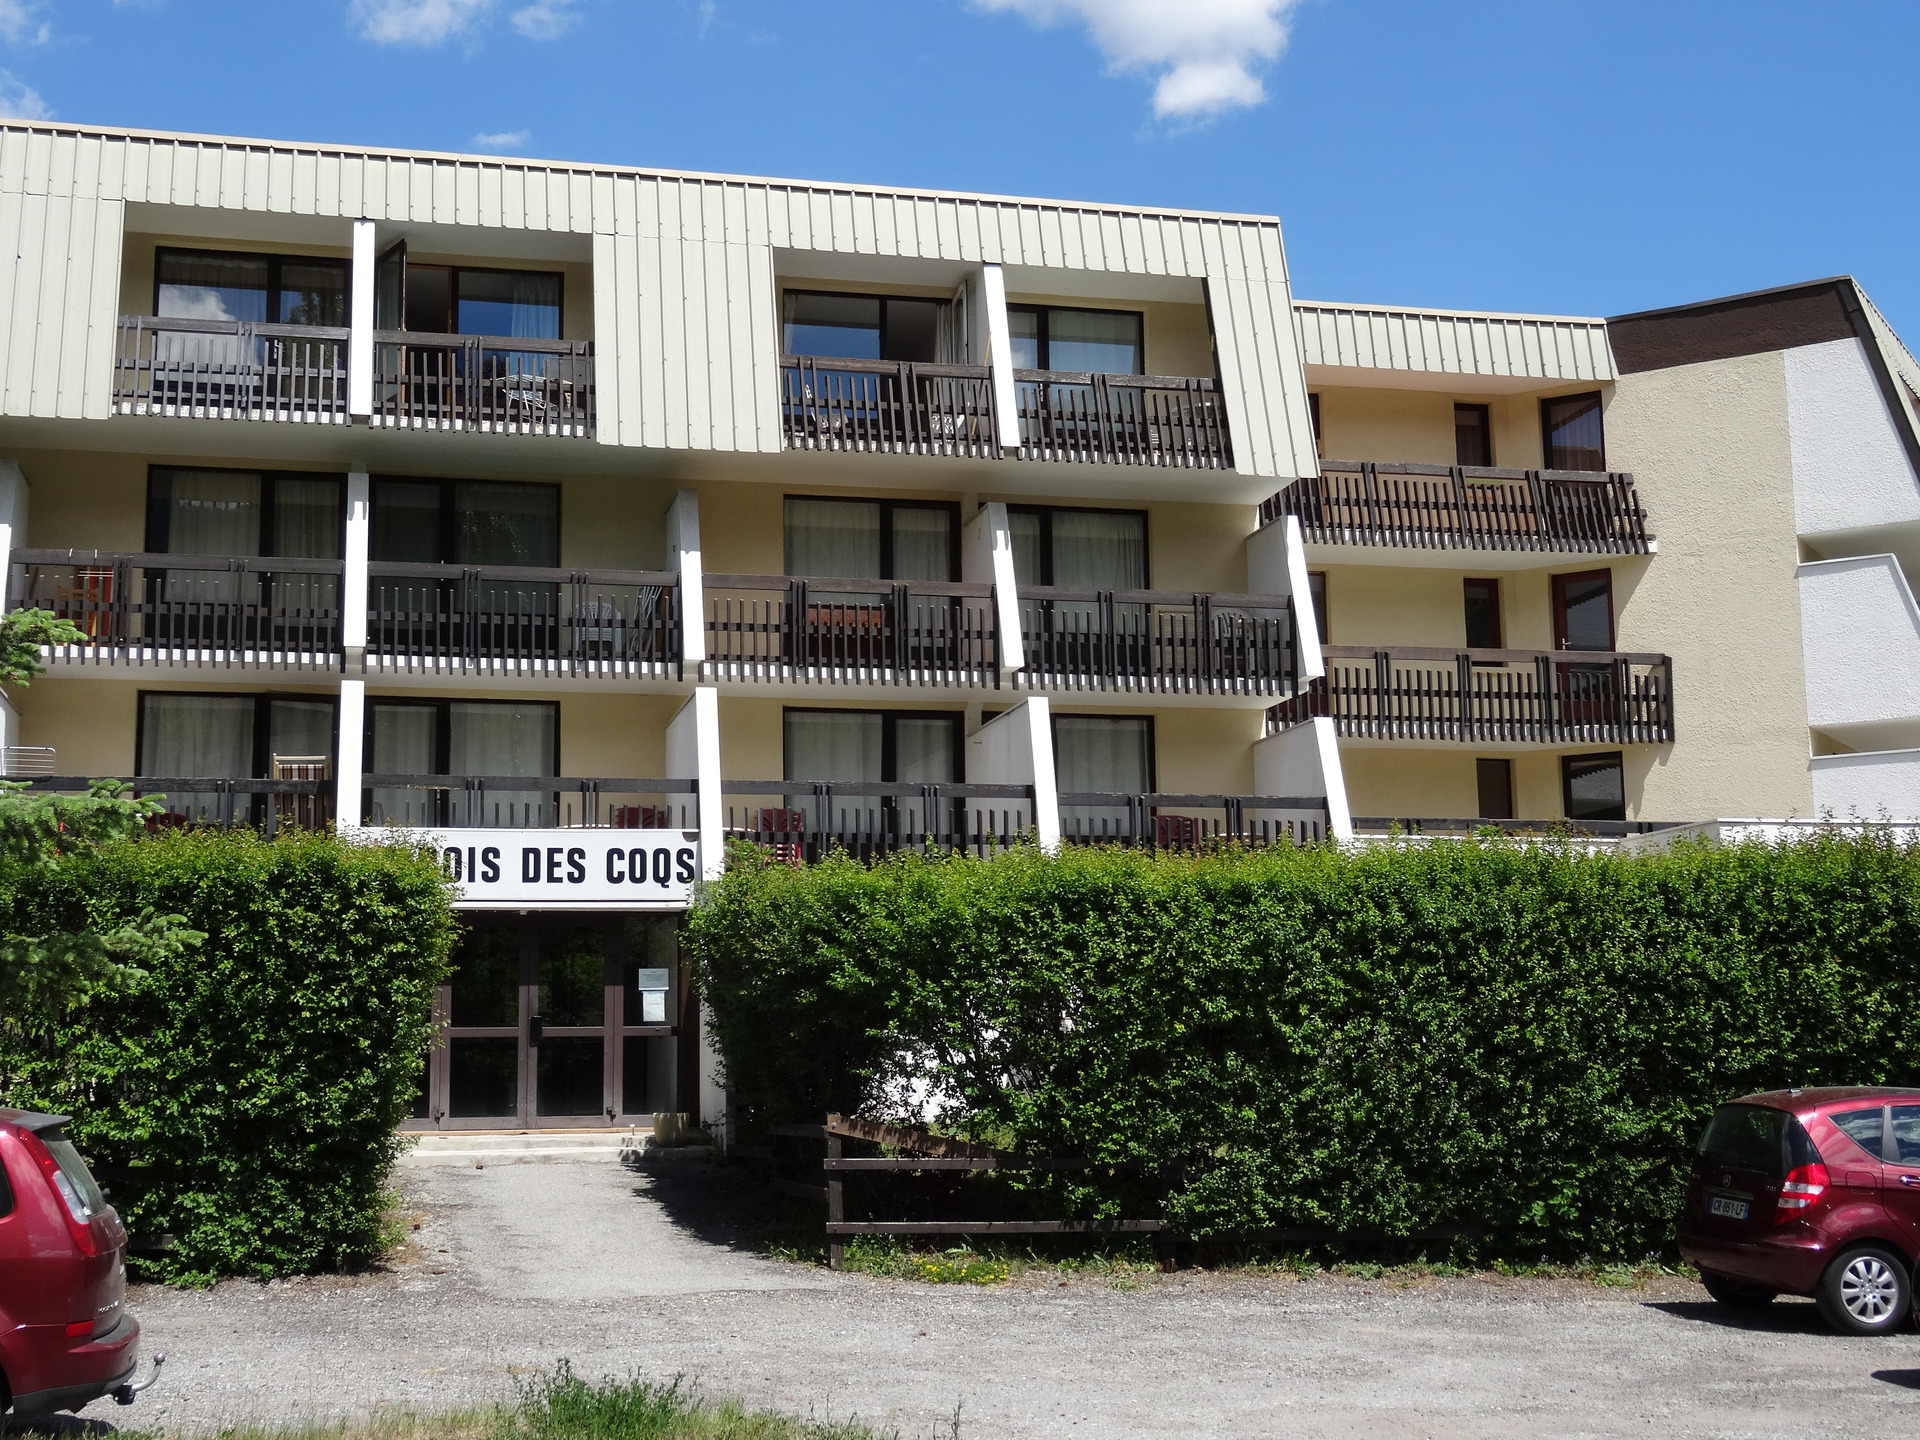 Apartements BOIS DES COQS - Serre Chevalier 1350 - Chantemerle